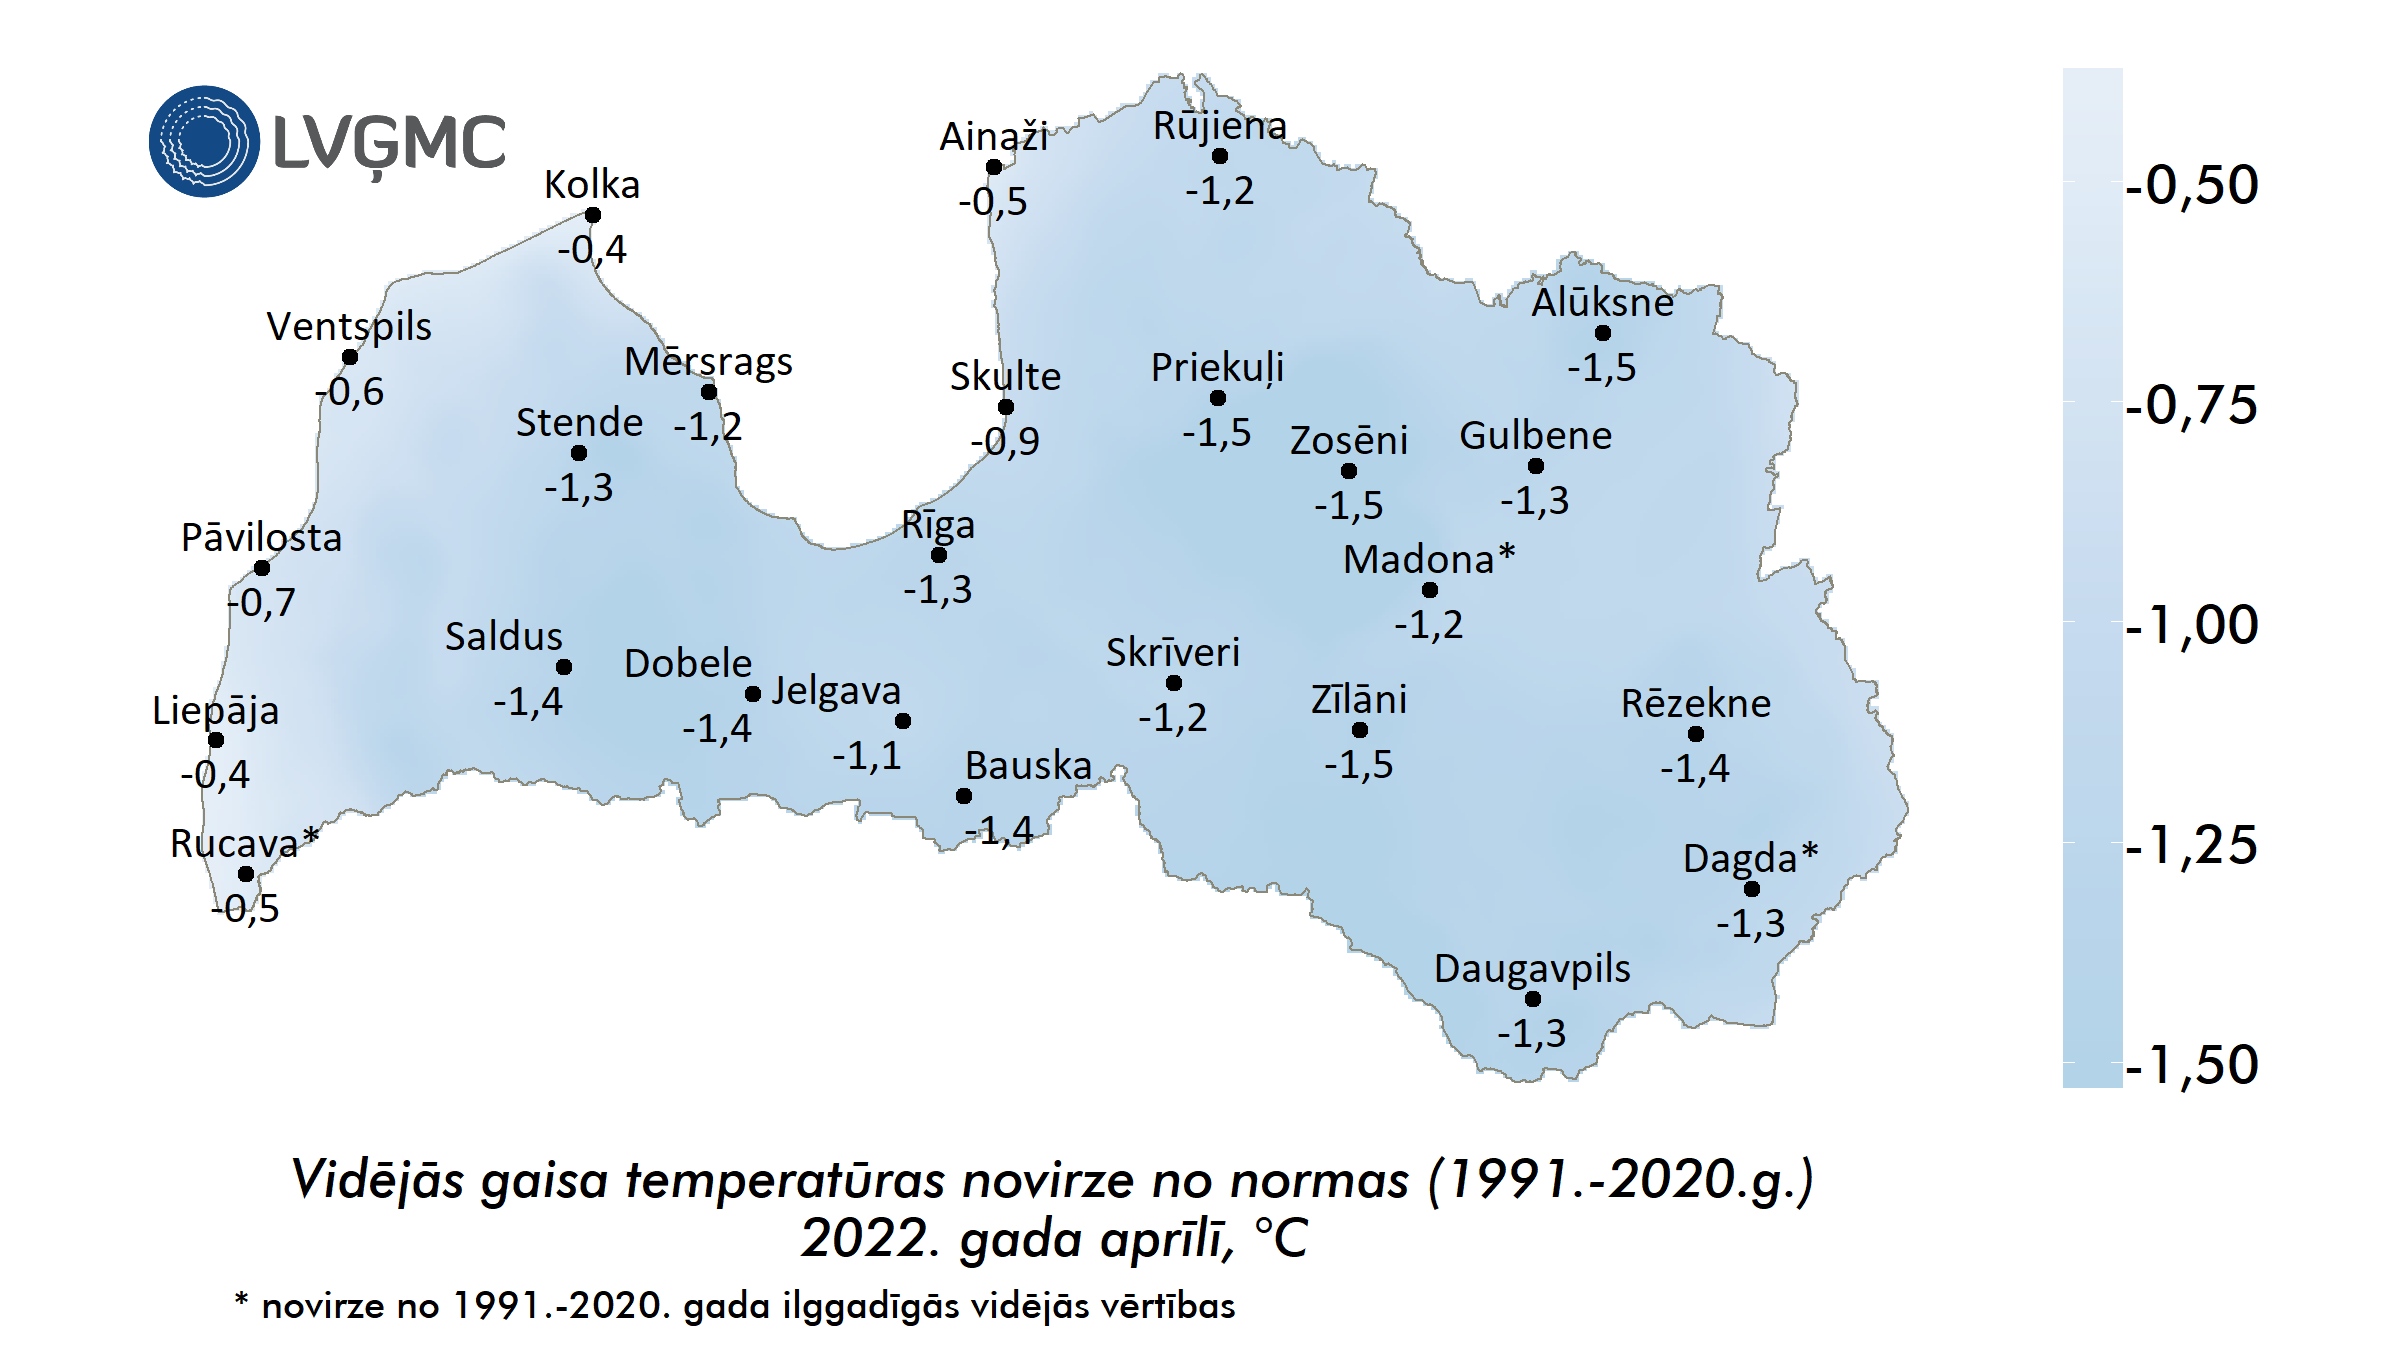 Vidējās gaisa temperatūras novirze no normas 2022. gada aprīlī, °C 